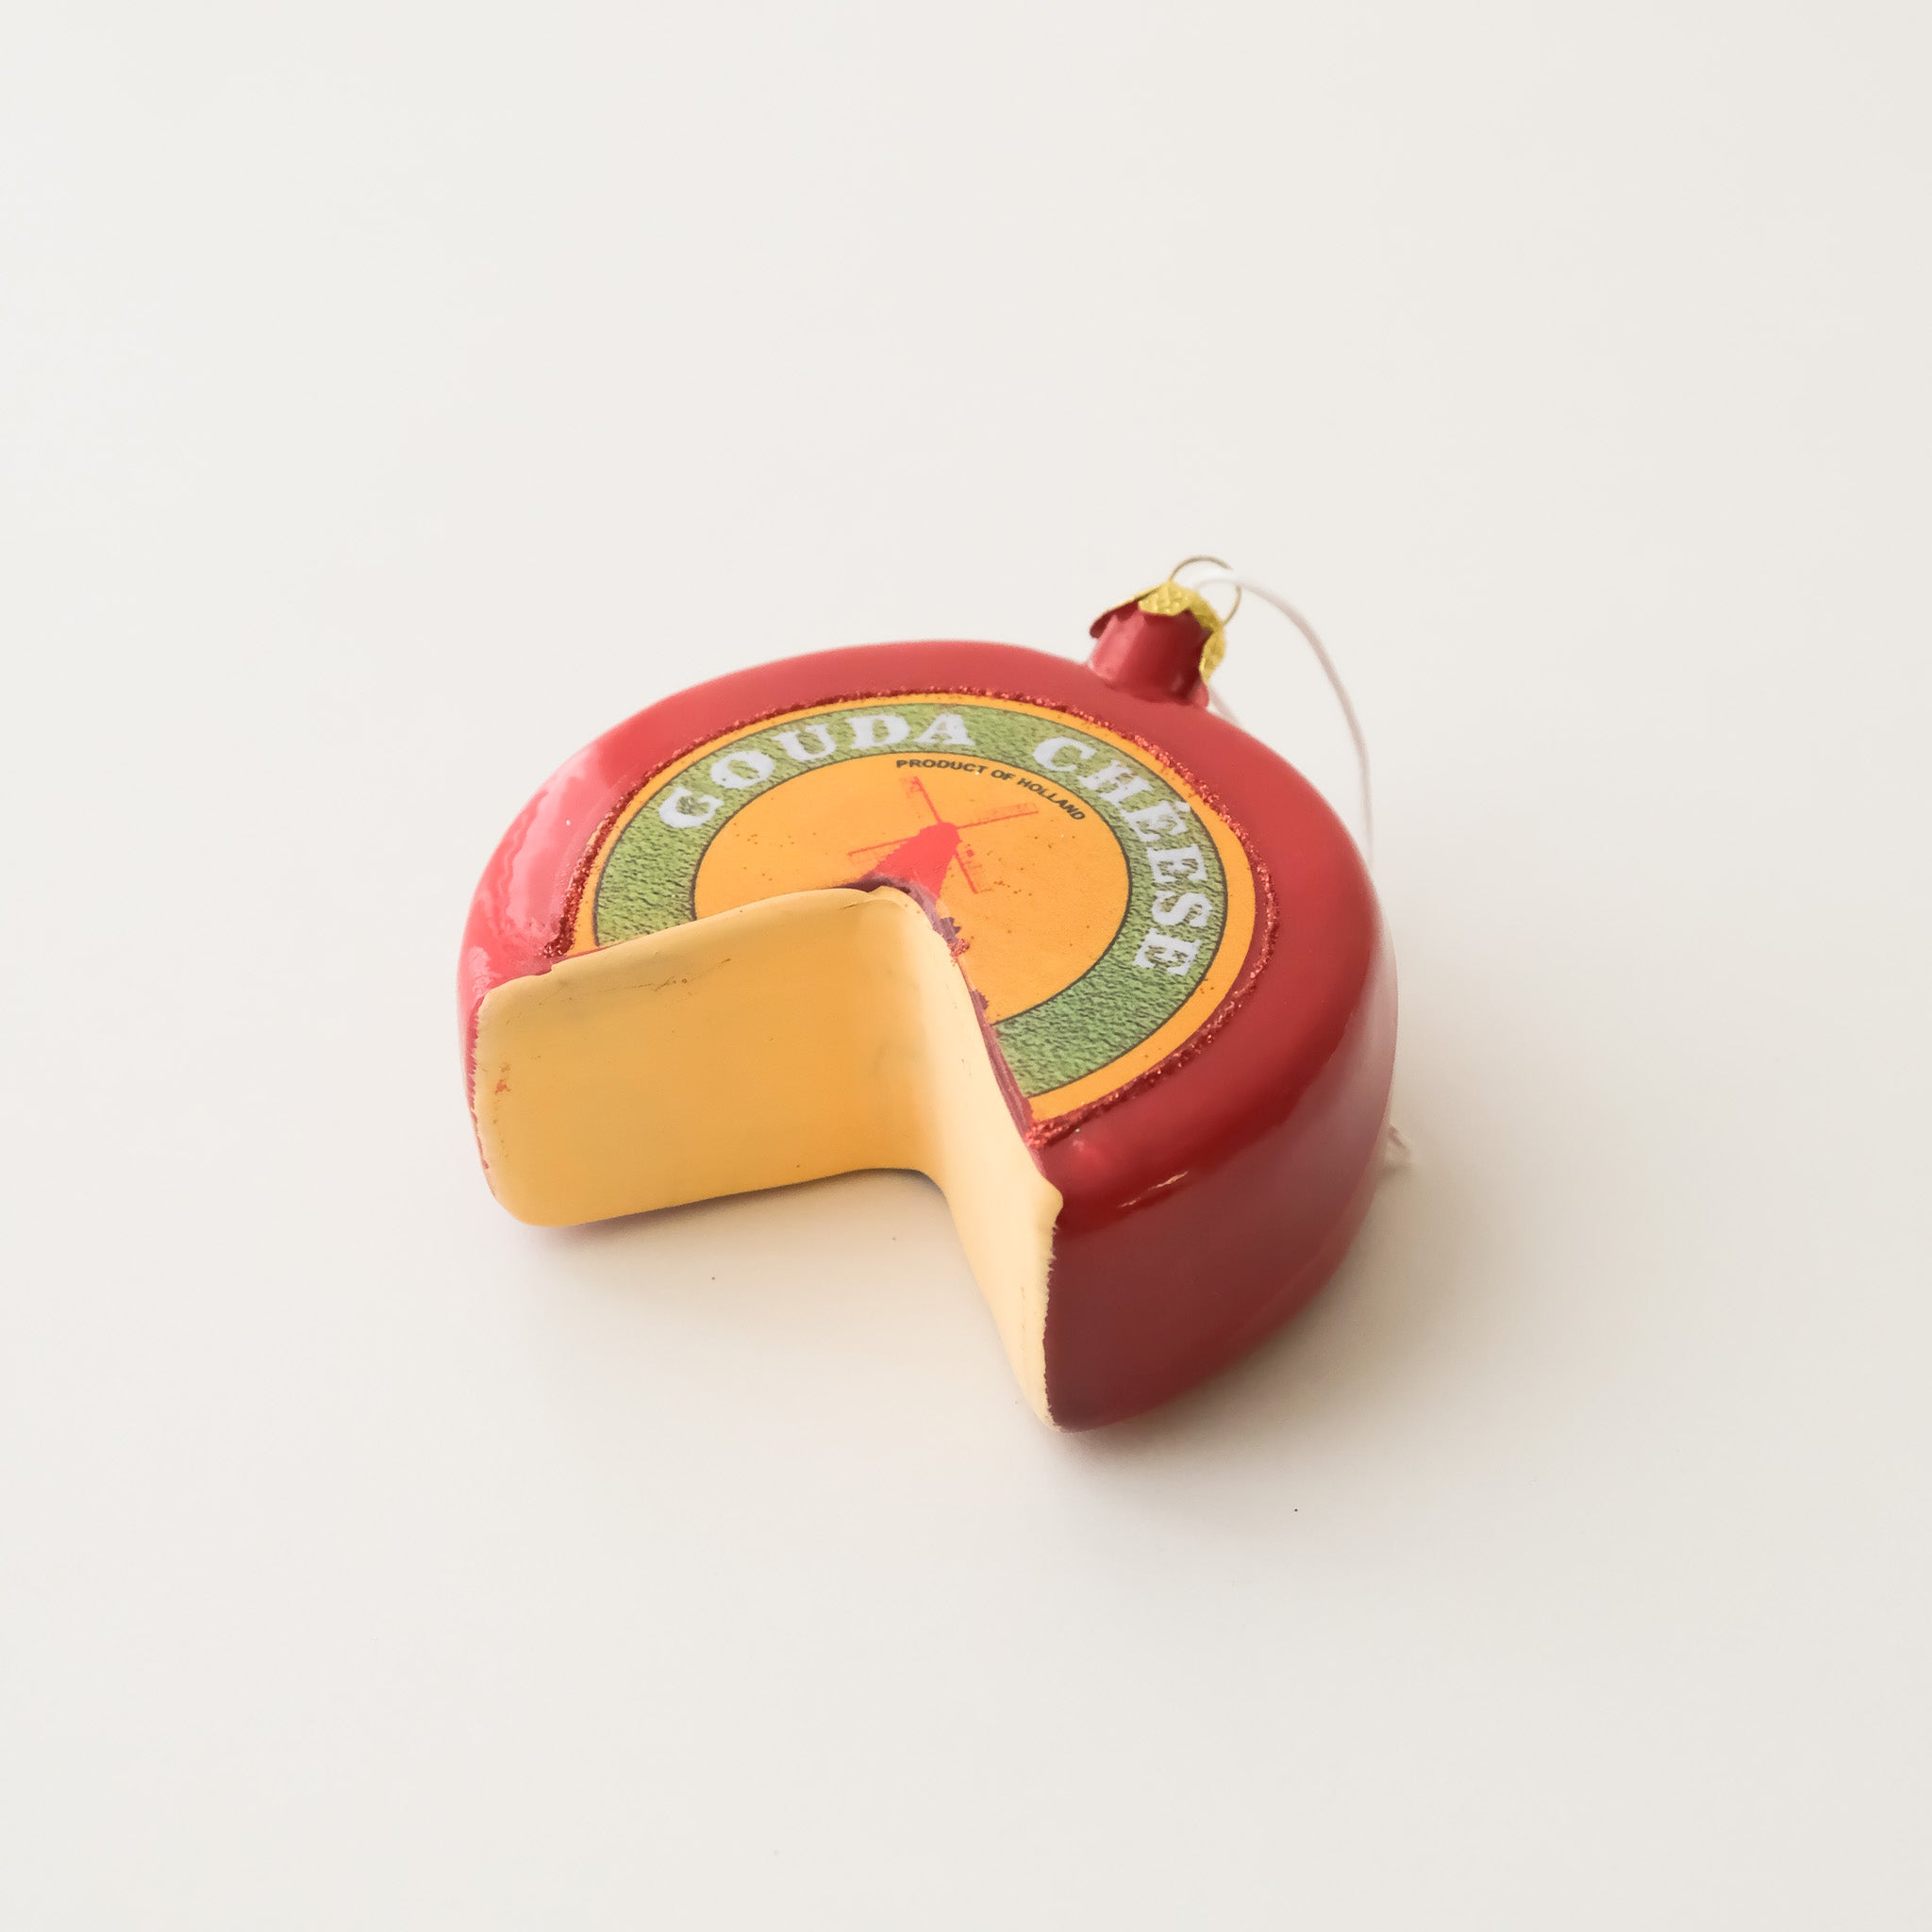 Vintage Heirloom Ornament - Gouda Cheese Wheel